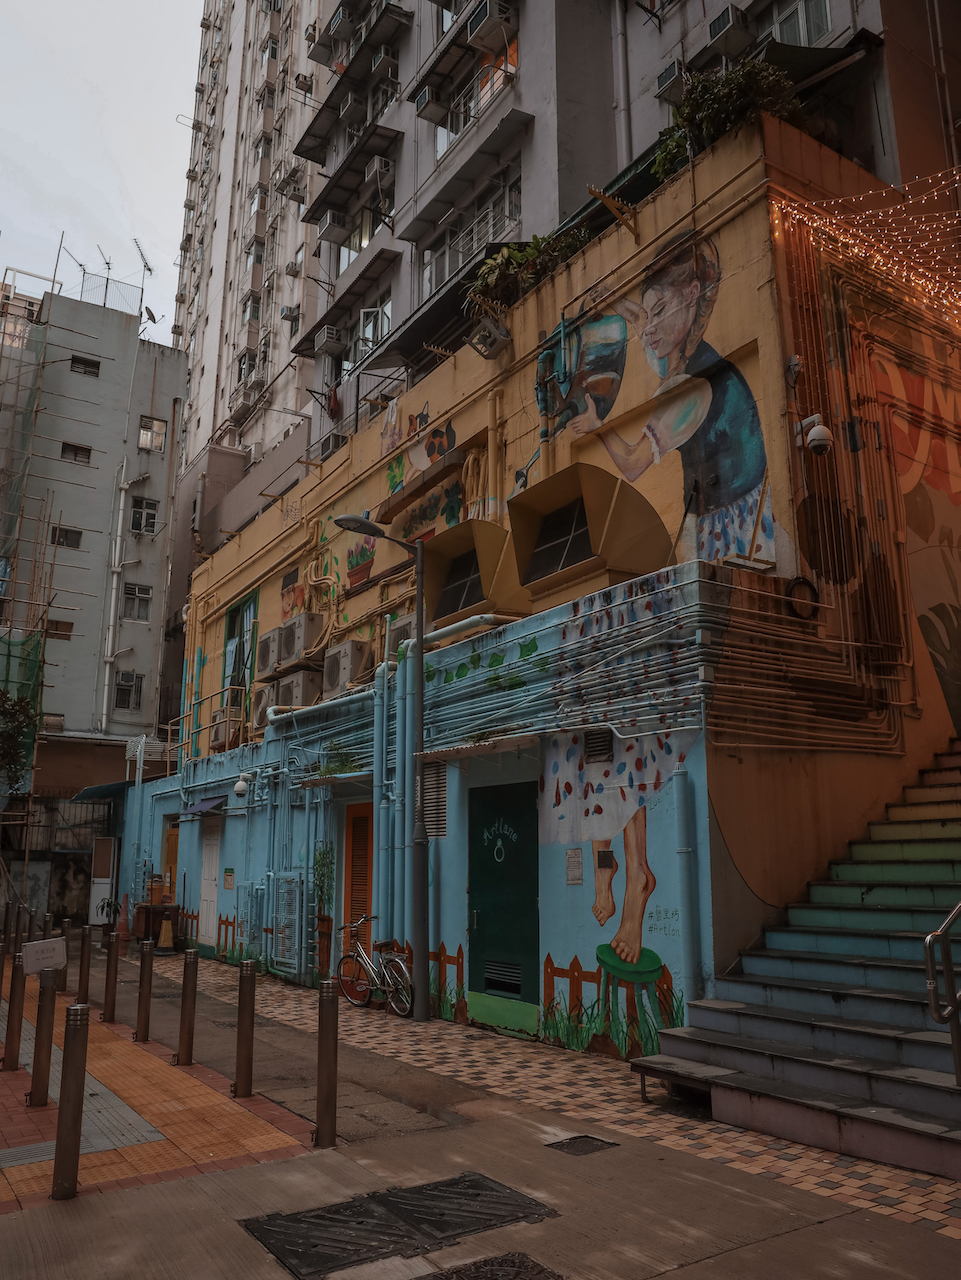 Escaliers et graffitis à Art Lane - Hong Kong